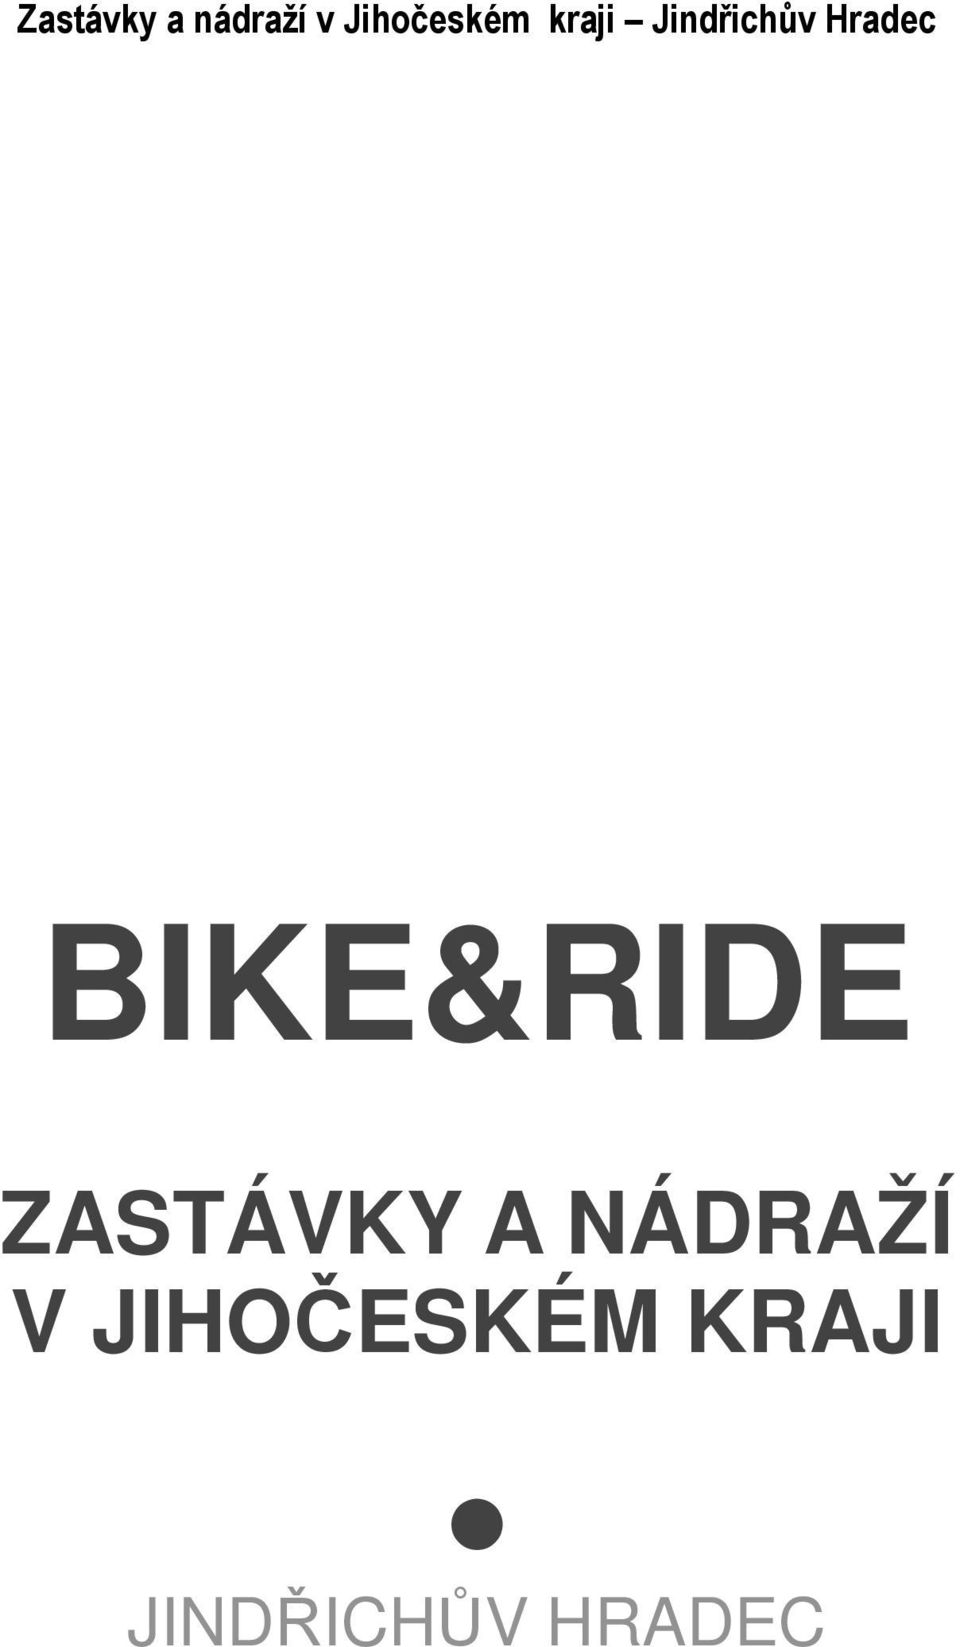 Hradec BIKE&RIDE ZASTÁVKY A